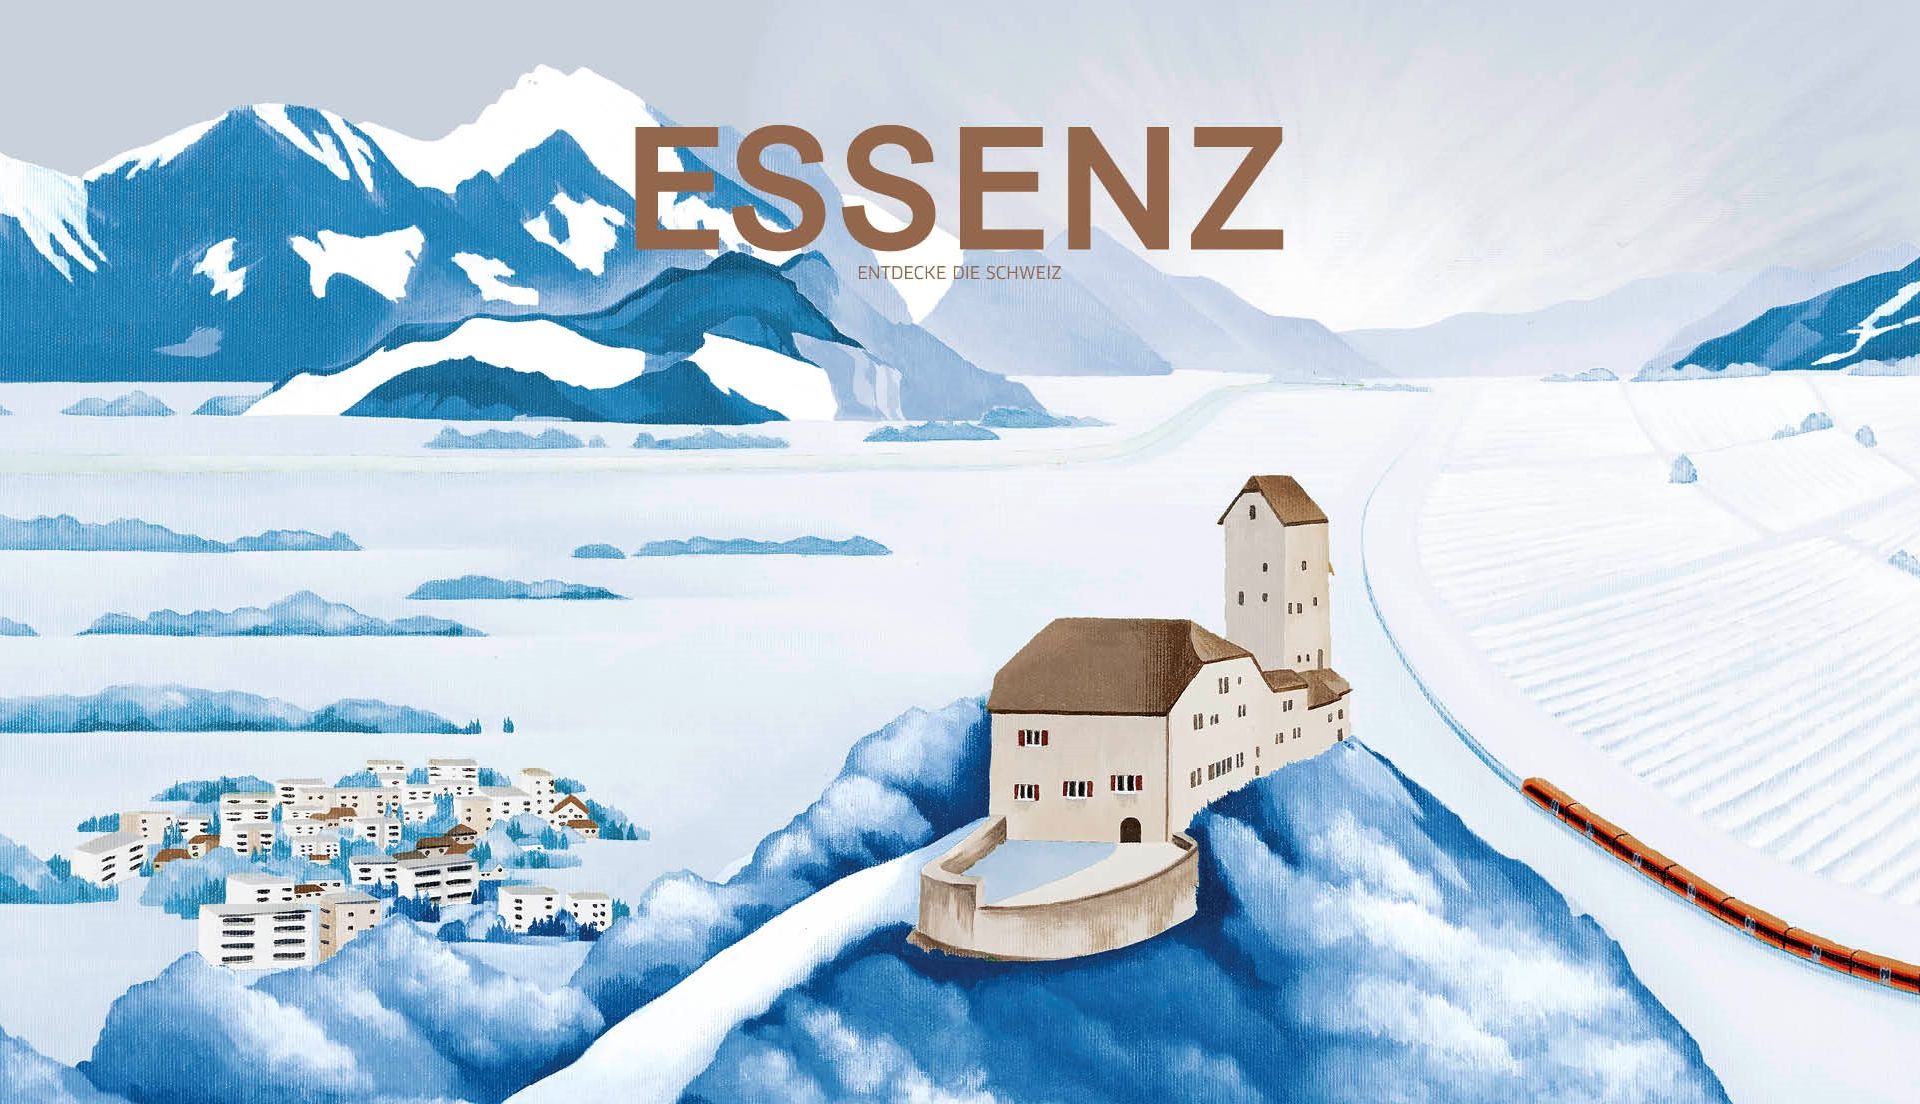 Winterausgabe des Kundenmagazins Essenz